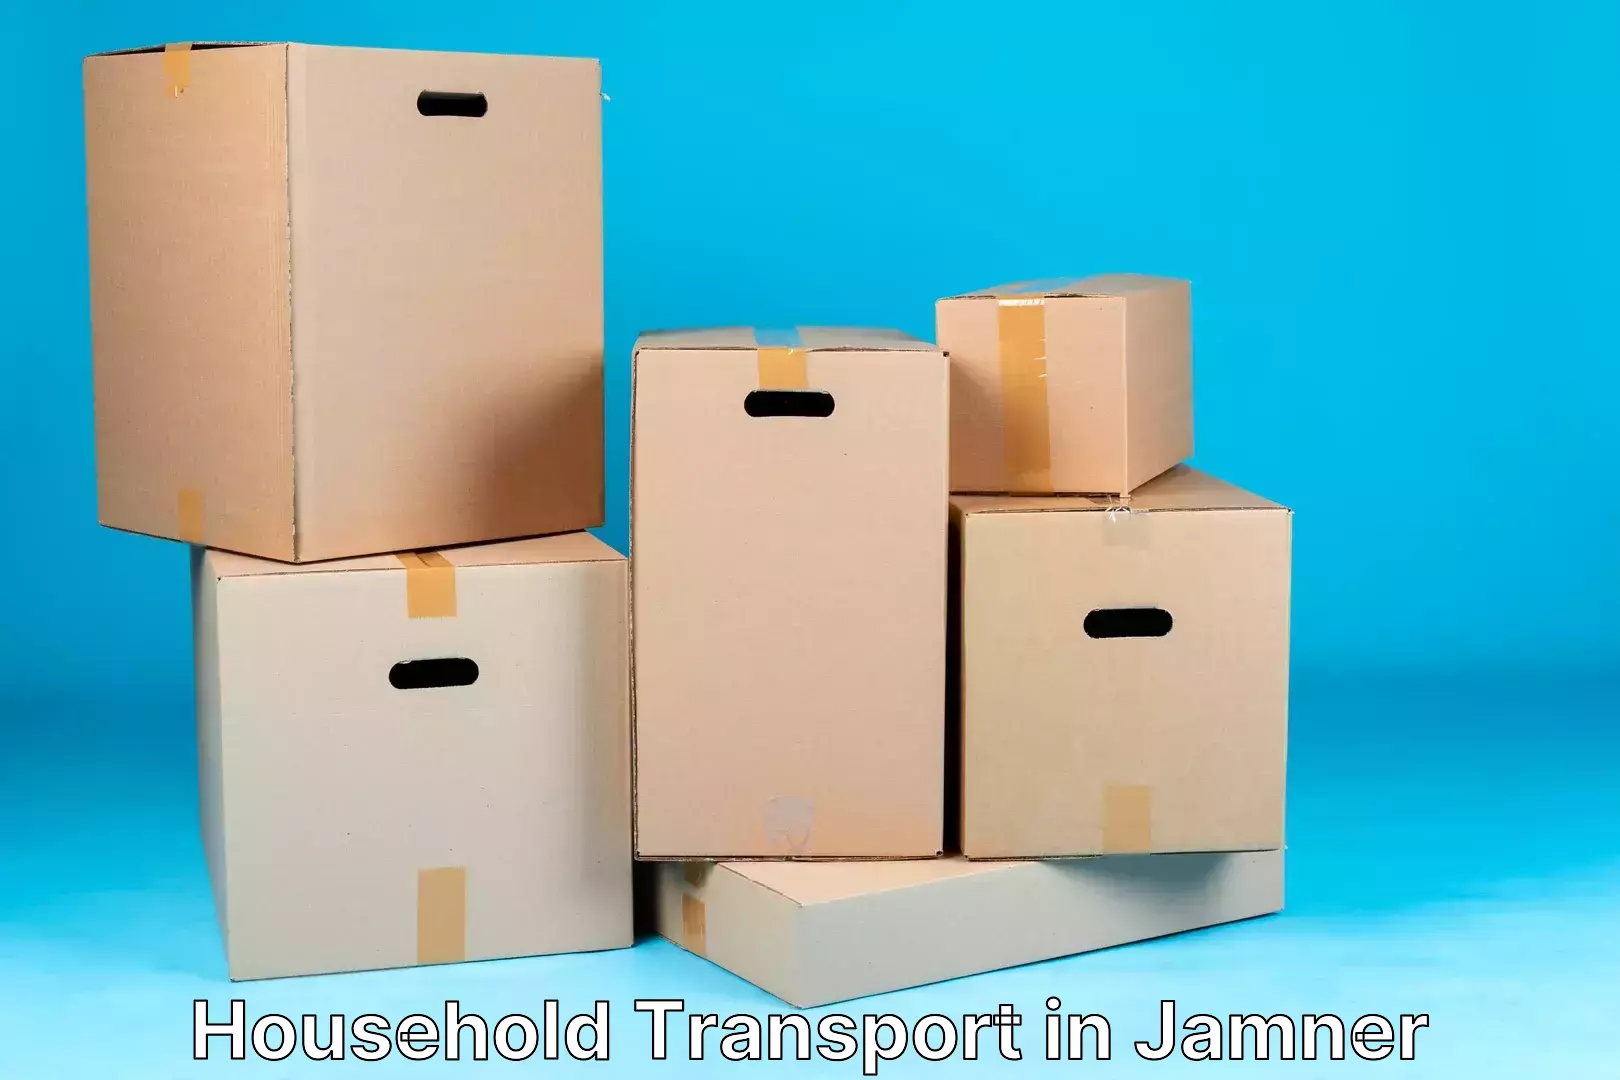 Door-to-door relocation services in Jamner